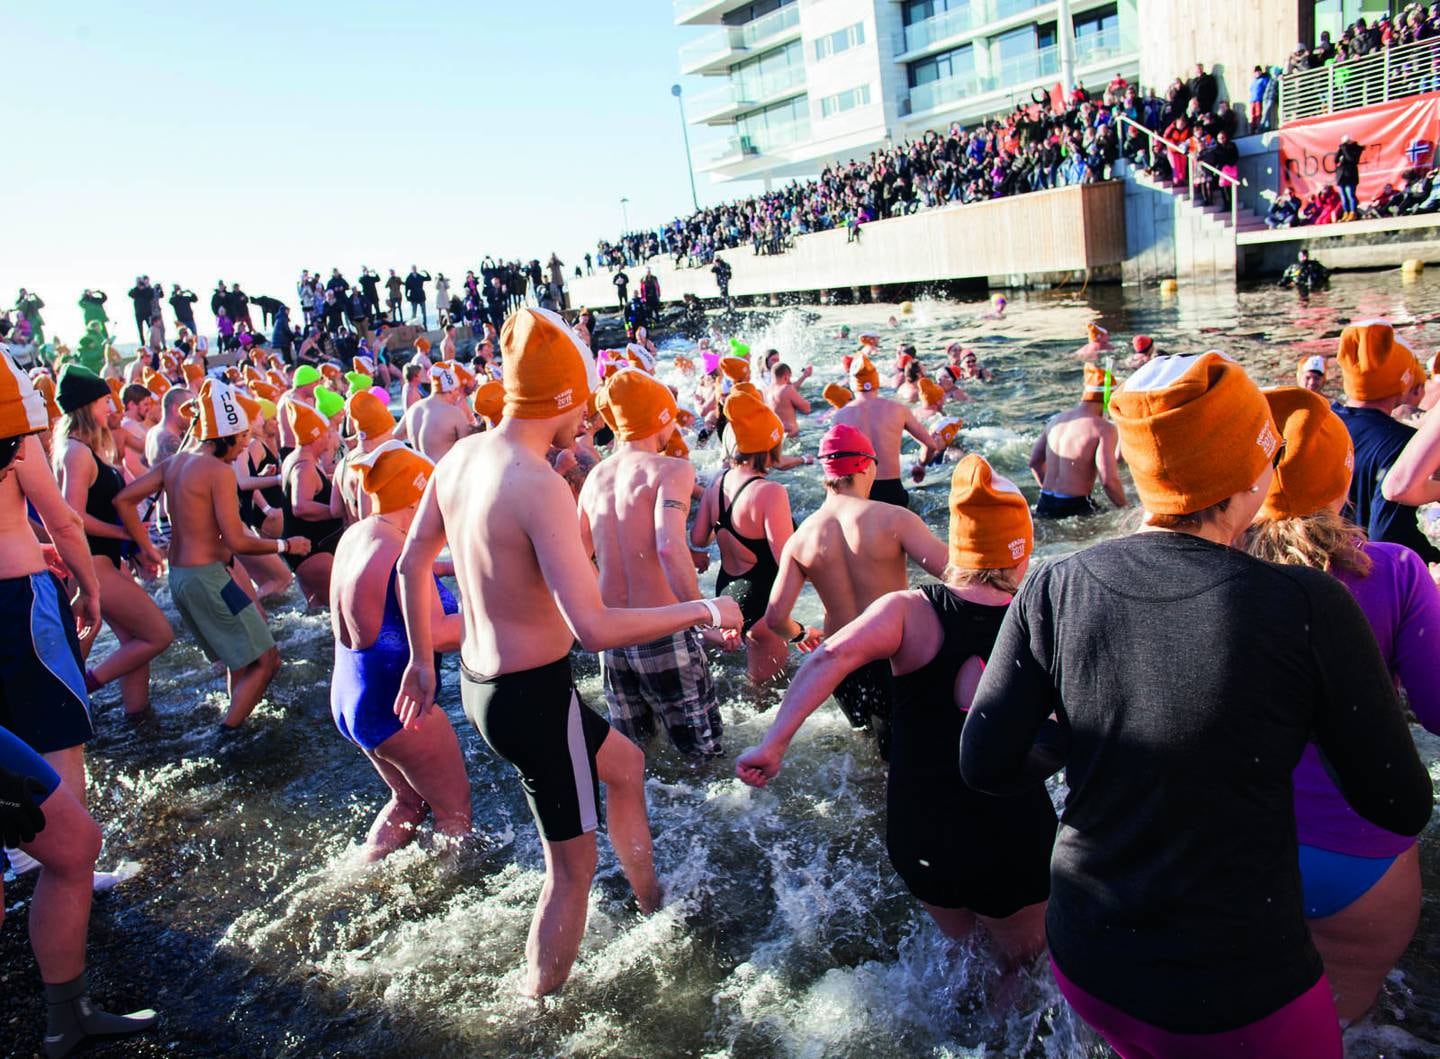 For snart syv år siden tok Anne Kristin Møller sitt første isbad – sammen med 320 andre på Tjuvholmen i Oslo, mens februarkulda herjet i vinden.